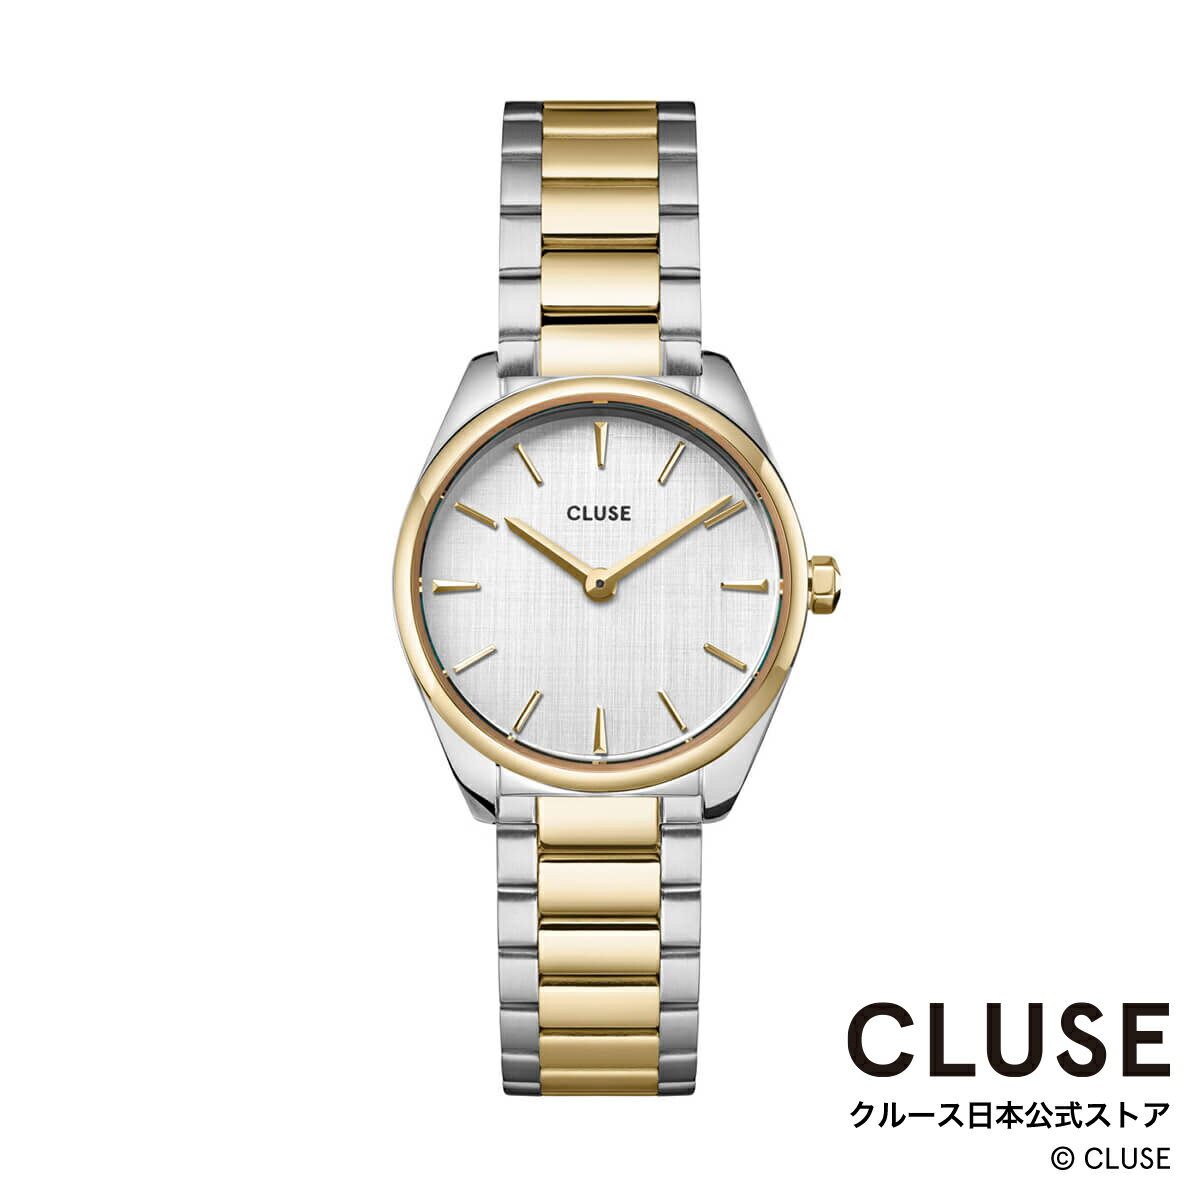 クルース ビジネス腕時計 レディース クルース CLUSE 日本公式ストア フェローチェミニ ゴールドシルバー ステンレスベルト レディース 女性 腕時計 時計 防水 クォーツ